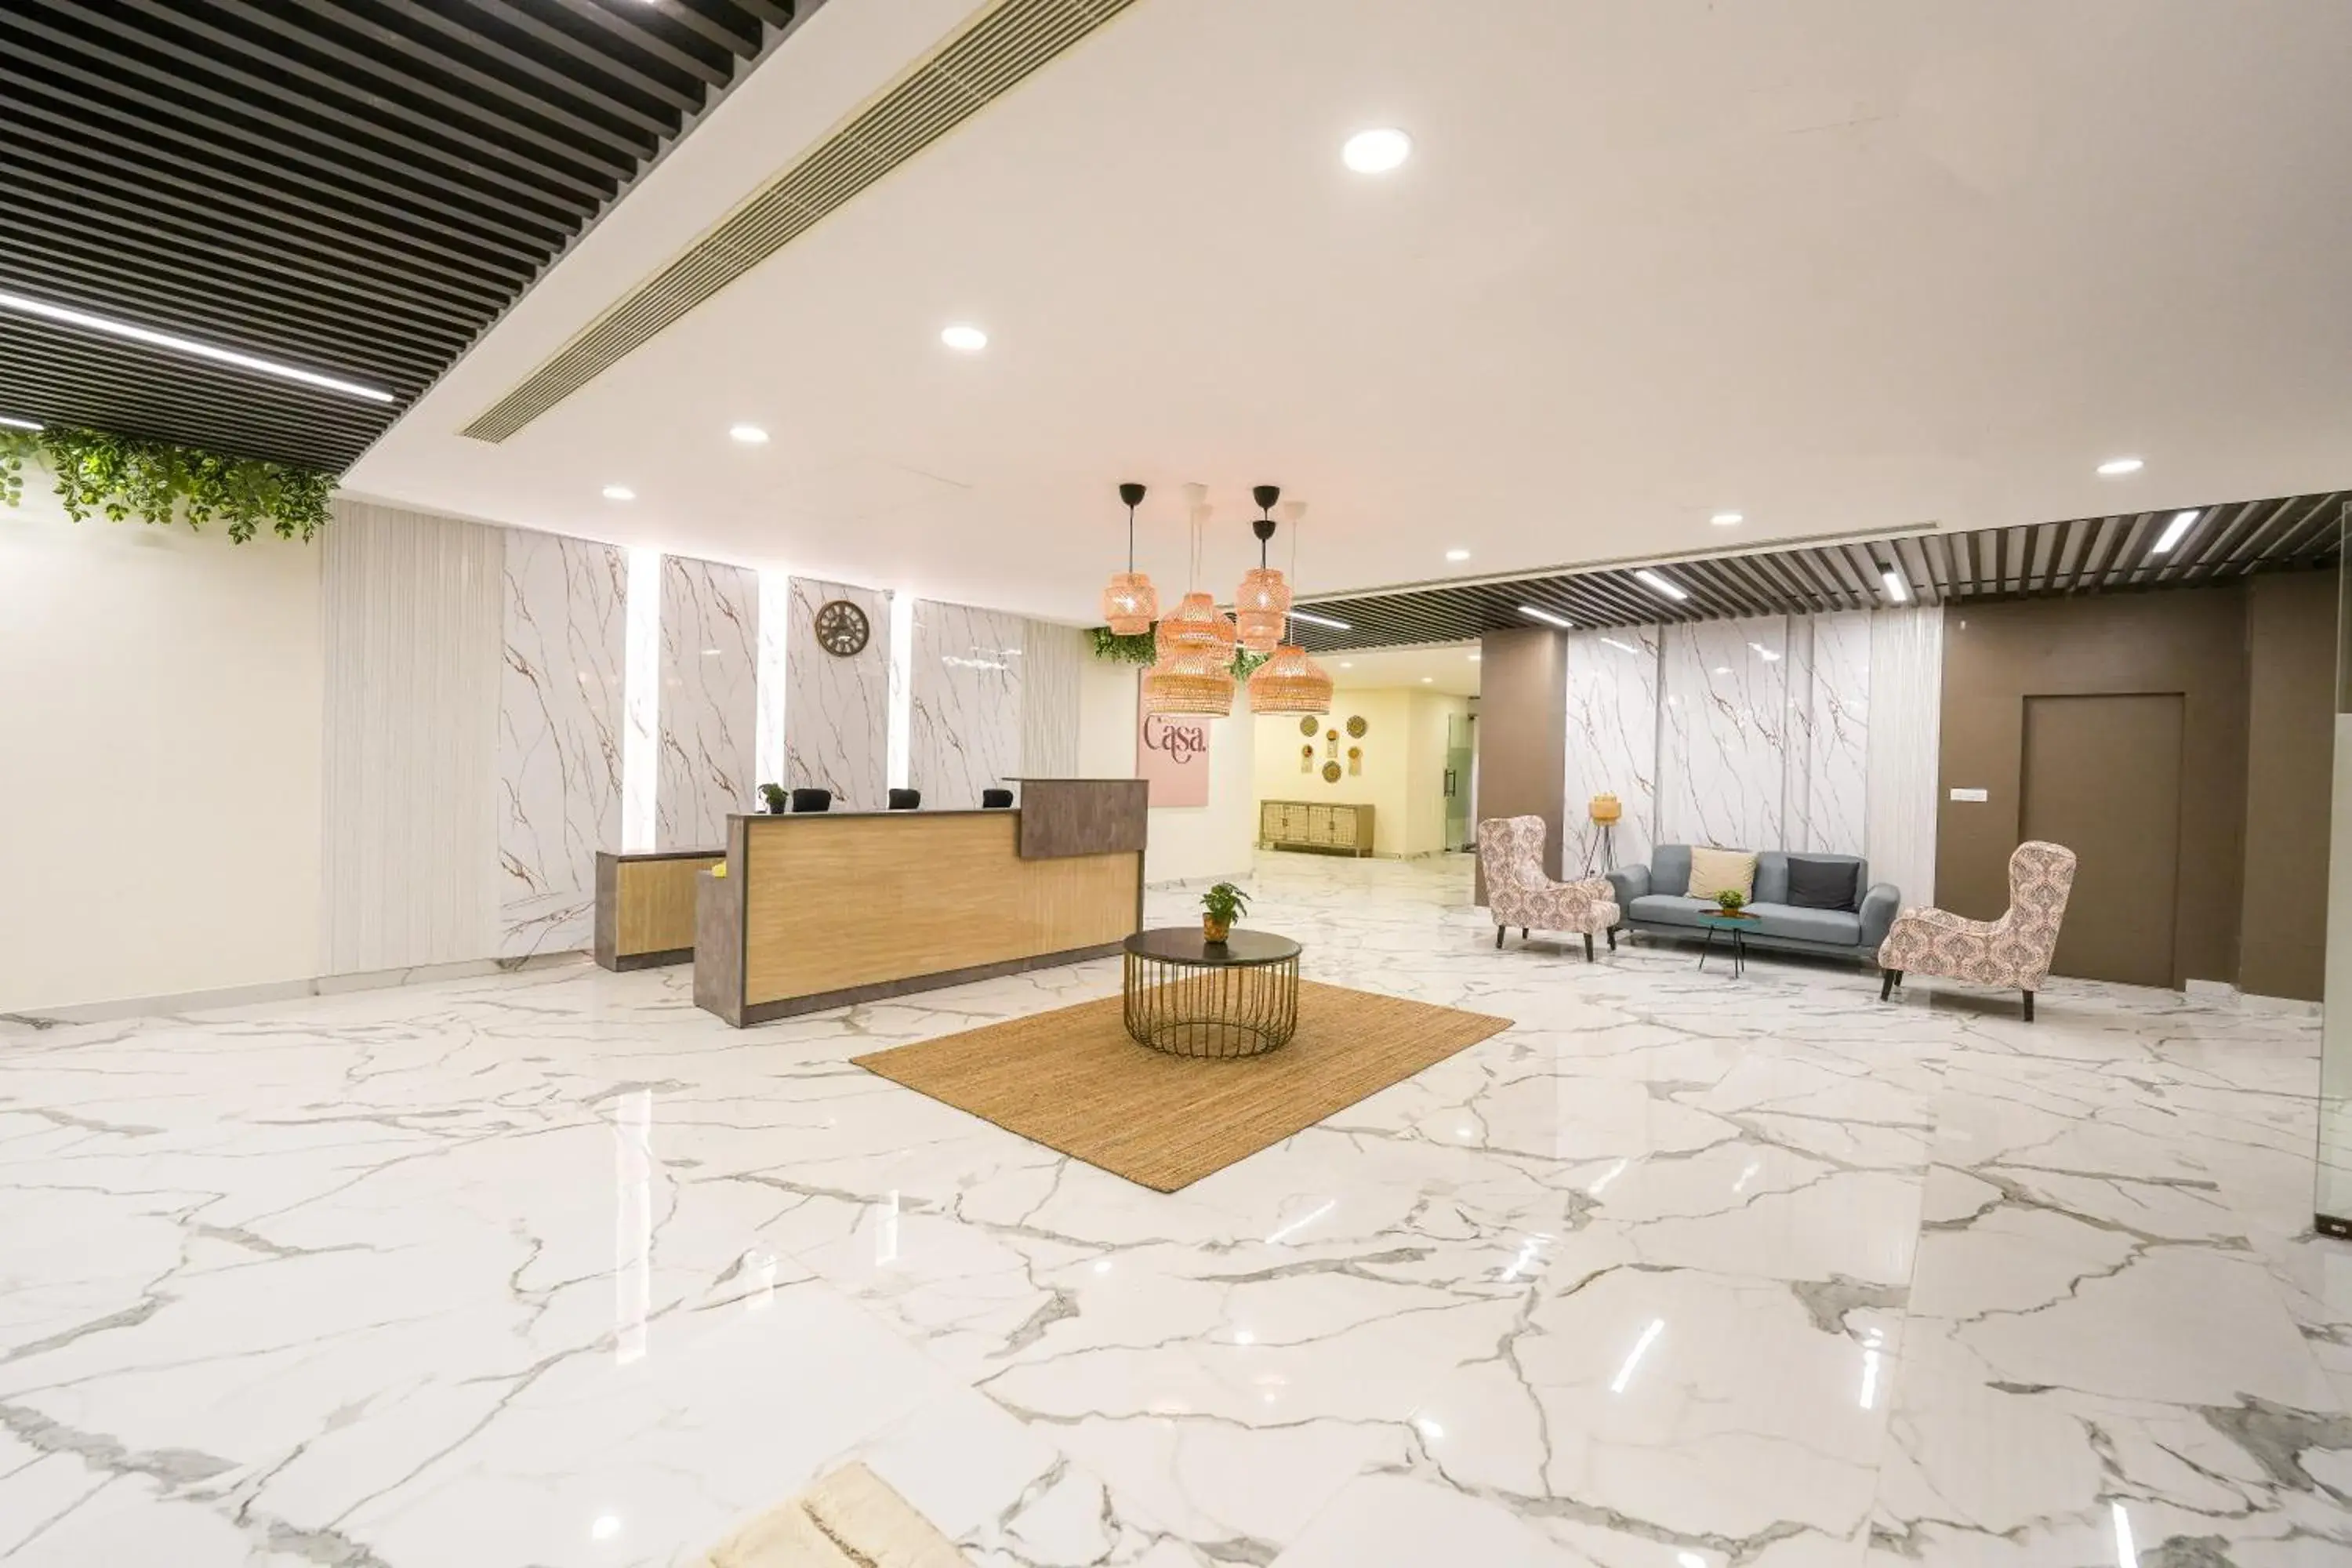 Lobby or reception, Lobby/Reception in Casa Hotel & Suites, Gachibowli, Hyderabad